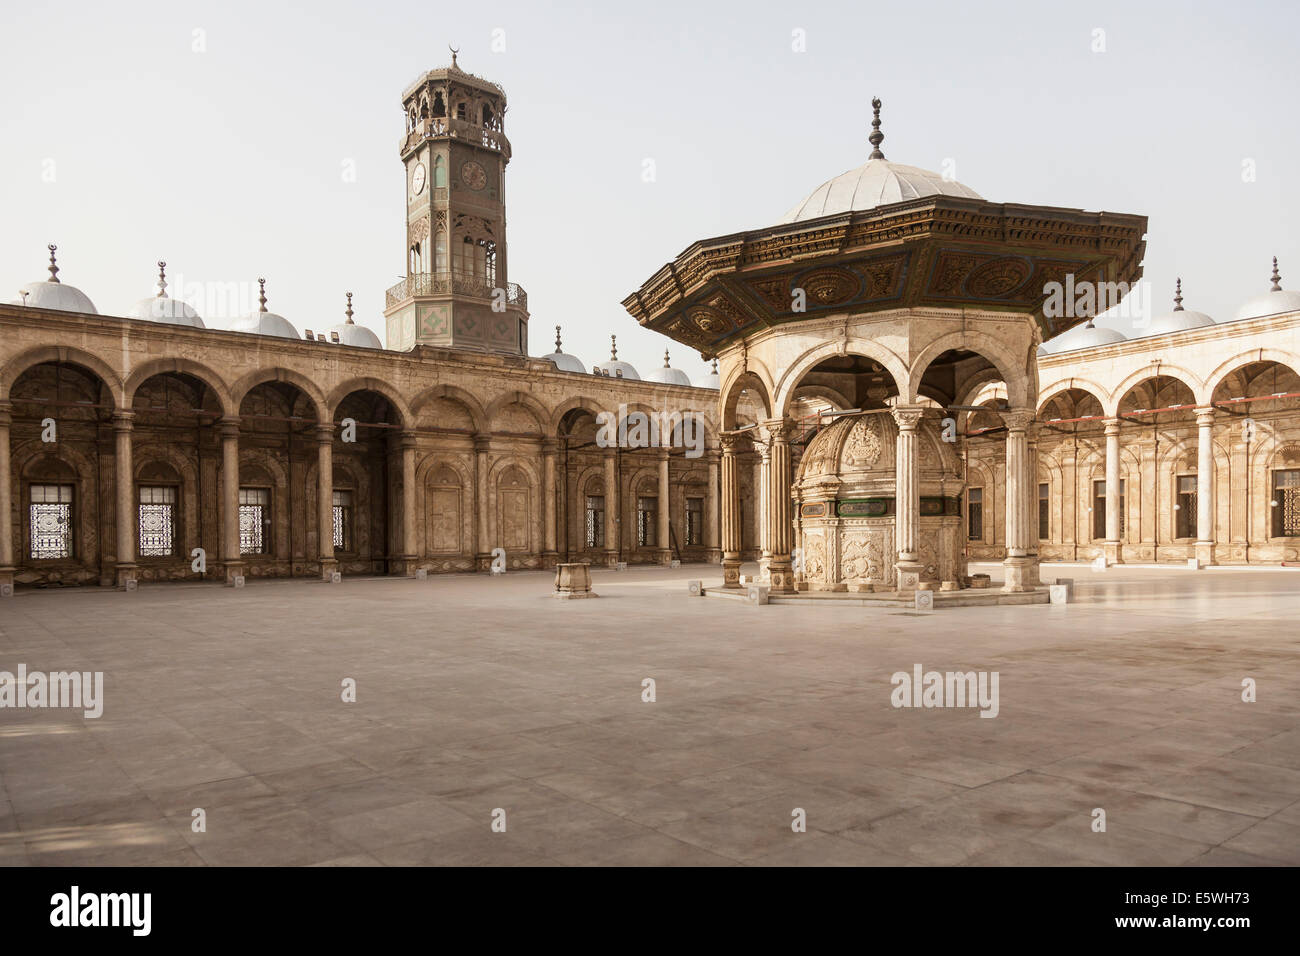 Cortile interno e la torre dell'orologio, la Moschea di alabastro / Moschea di Muhammad Ali Pasha nella Cittadella del Cairo in Egitto Foto Stock